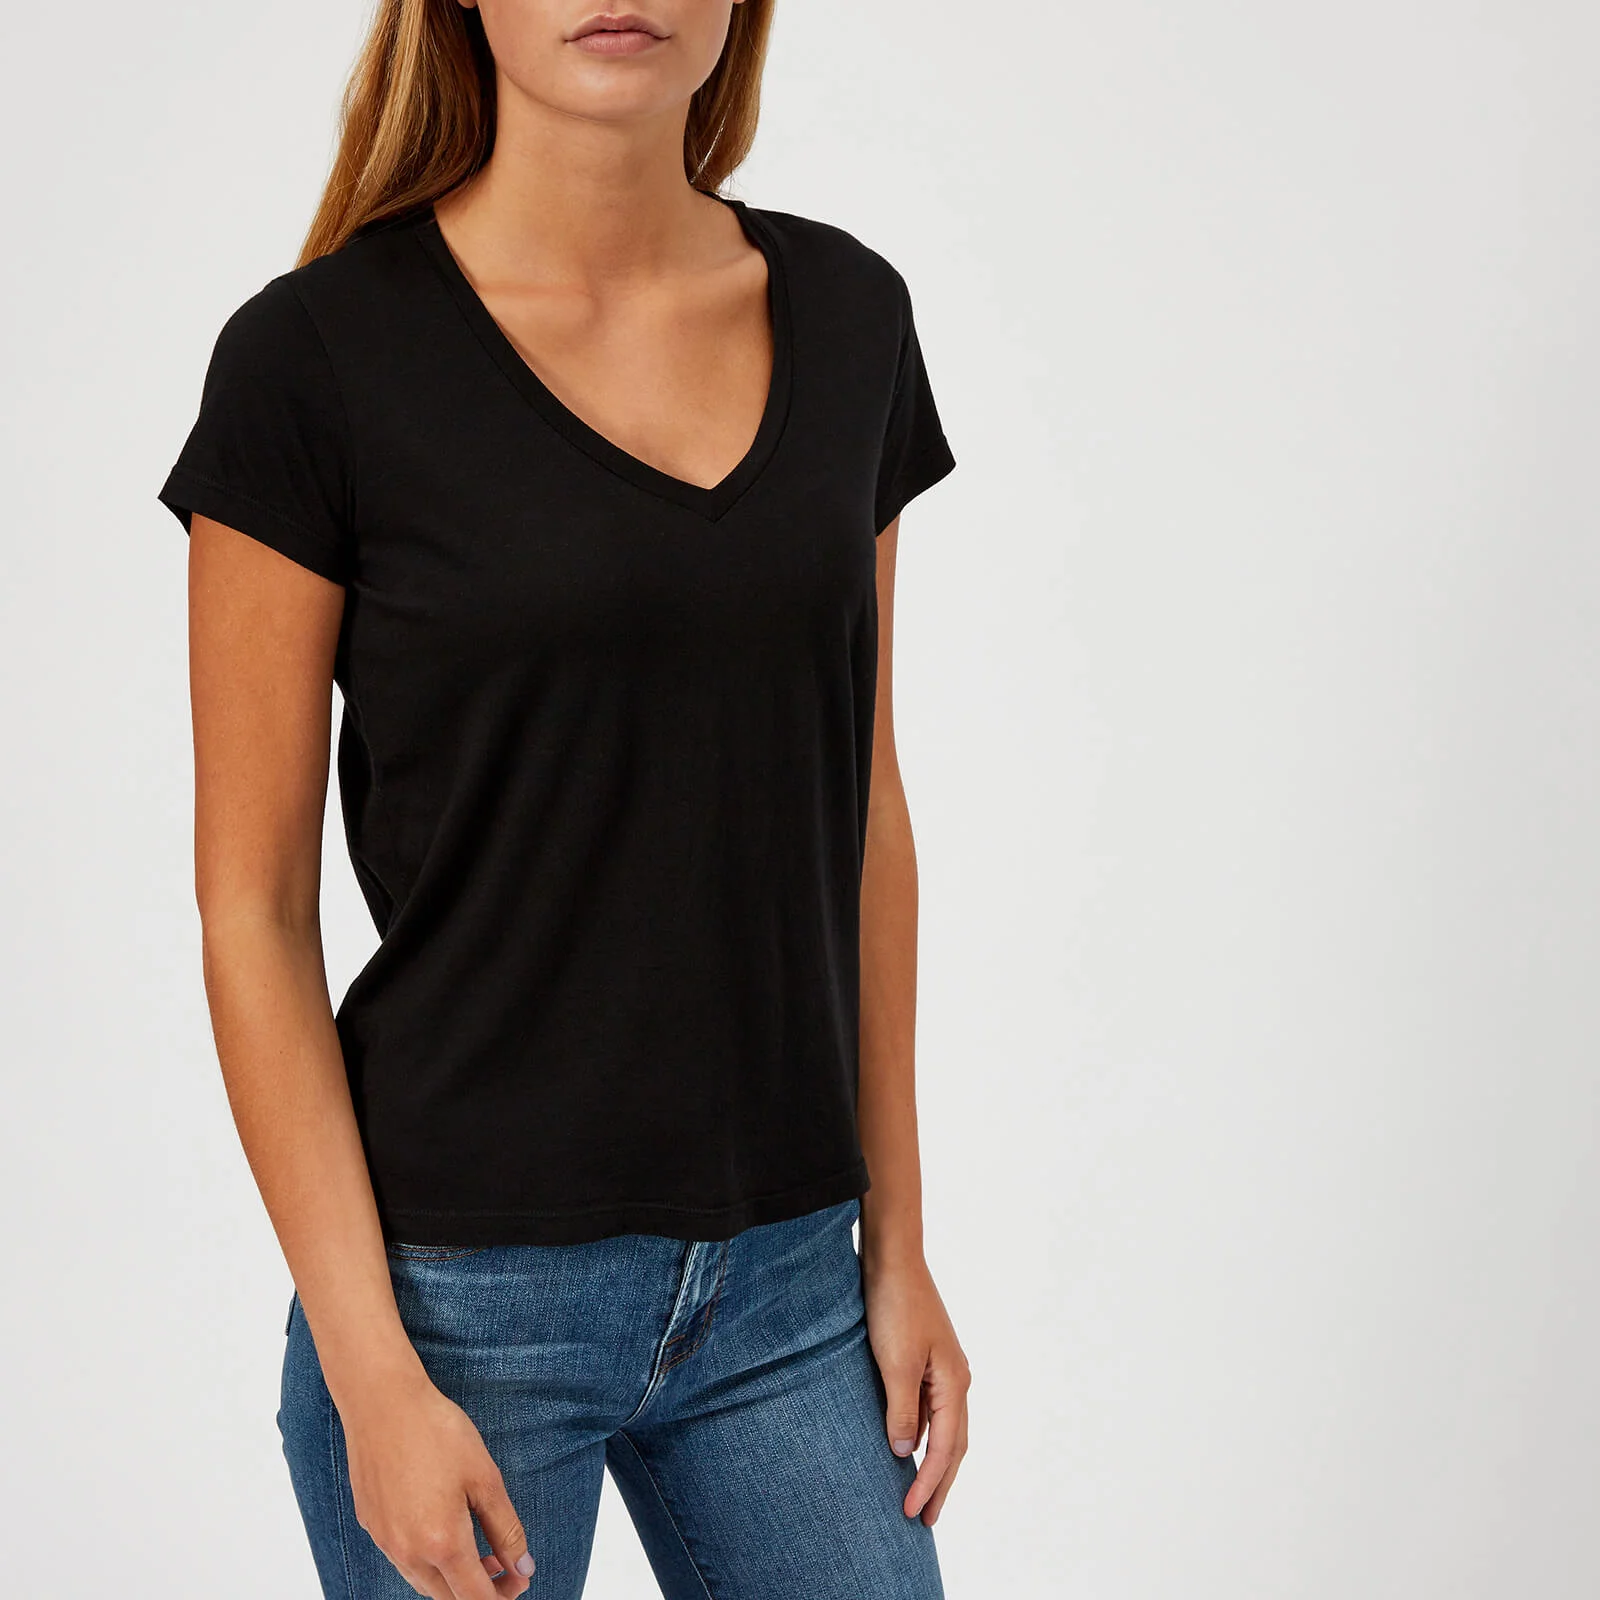 J Brand Women's Janis V Neck T-Shirt - Black Image 1